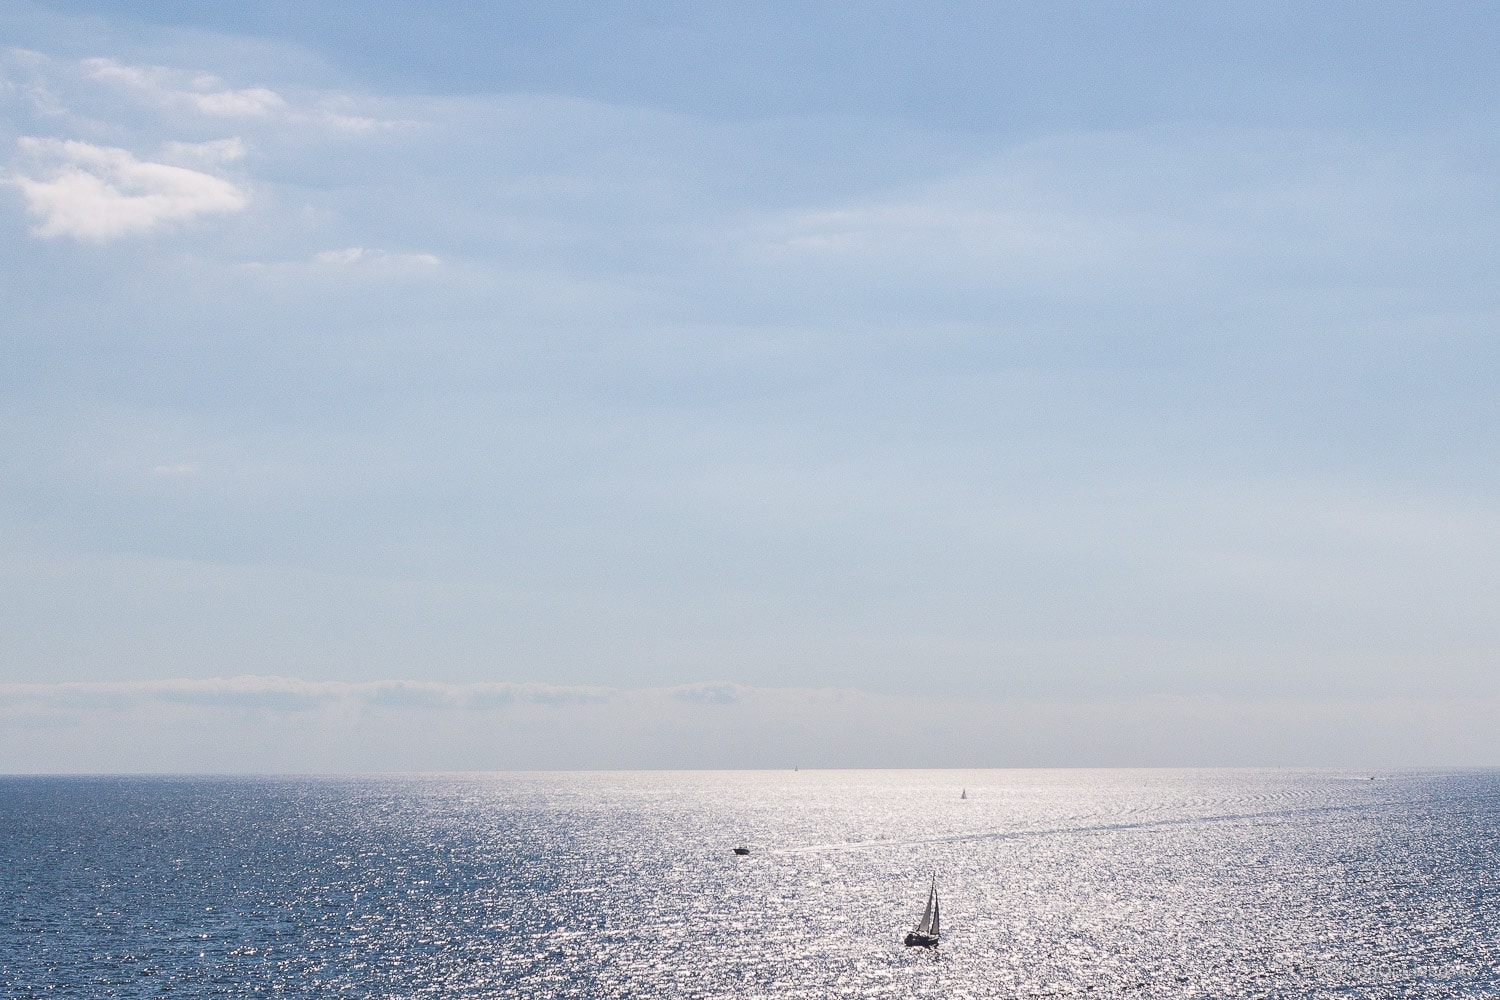 Kreuzfahrt als Best-Ager und Rentner - Kreuzfahrtblog - Vorstellung Kreuzfahrtschiffe - Einschiffung und Erfahrung auf der TUI Mein Schiff 5 - Mittelmeerkreuzfahrt - Hafen von Palma de Mallorca